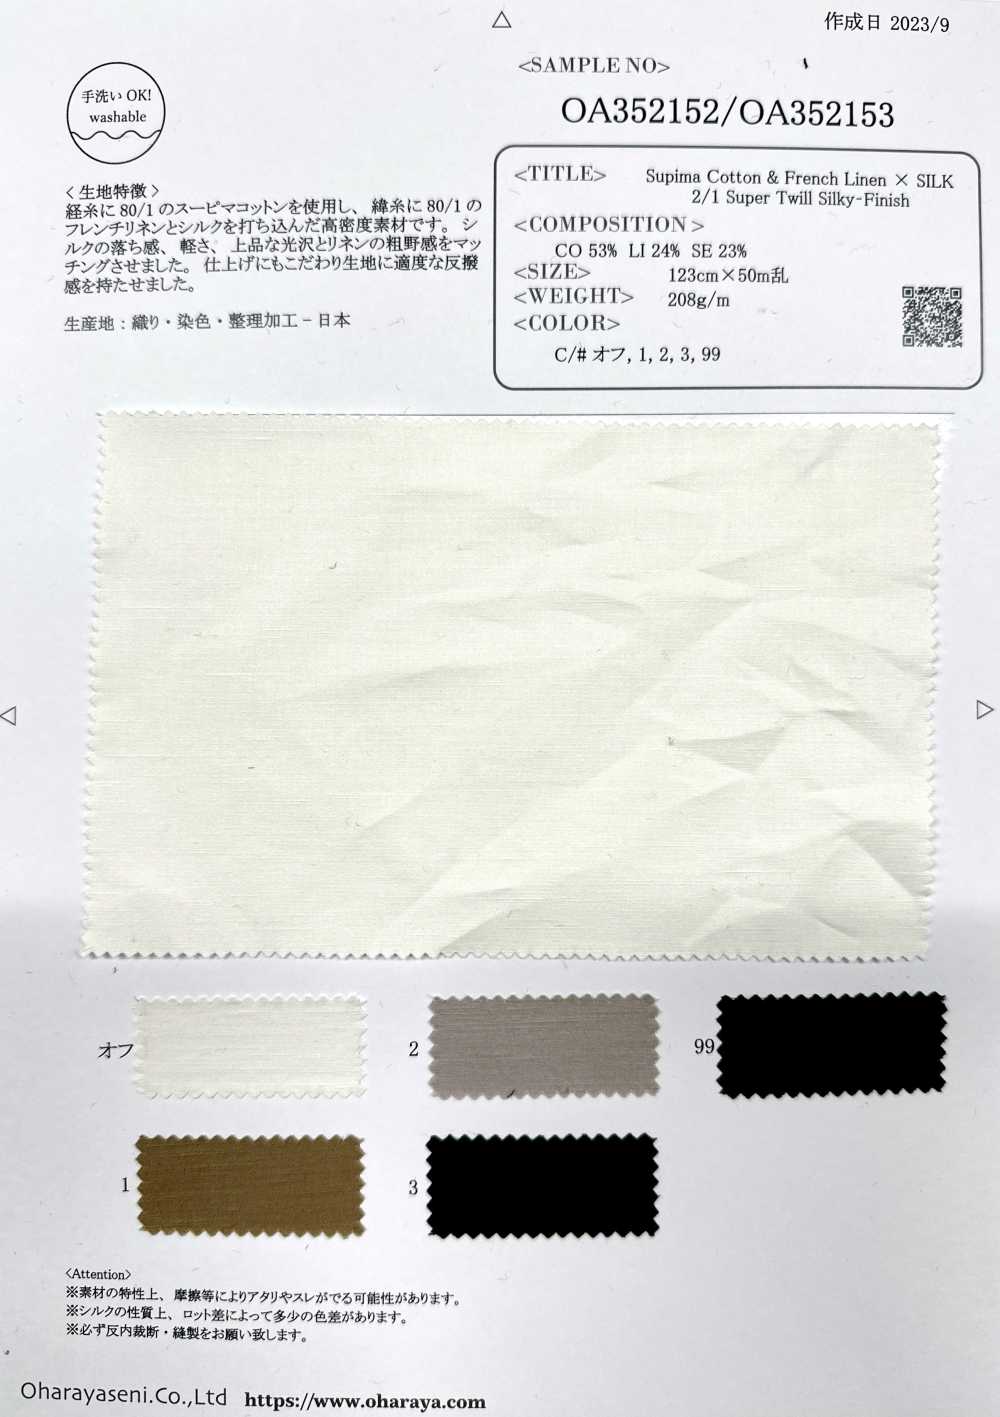 OA352153 Cotone Supima E Lino Francese × SILK 2/1 Super Twill Con Finitura Setosa[Tessile / Tessuto] Oharayaseni